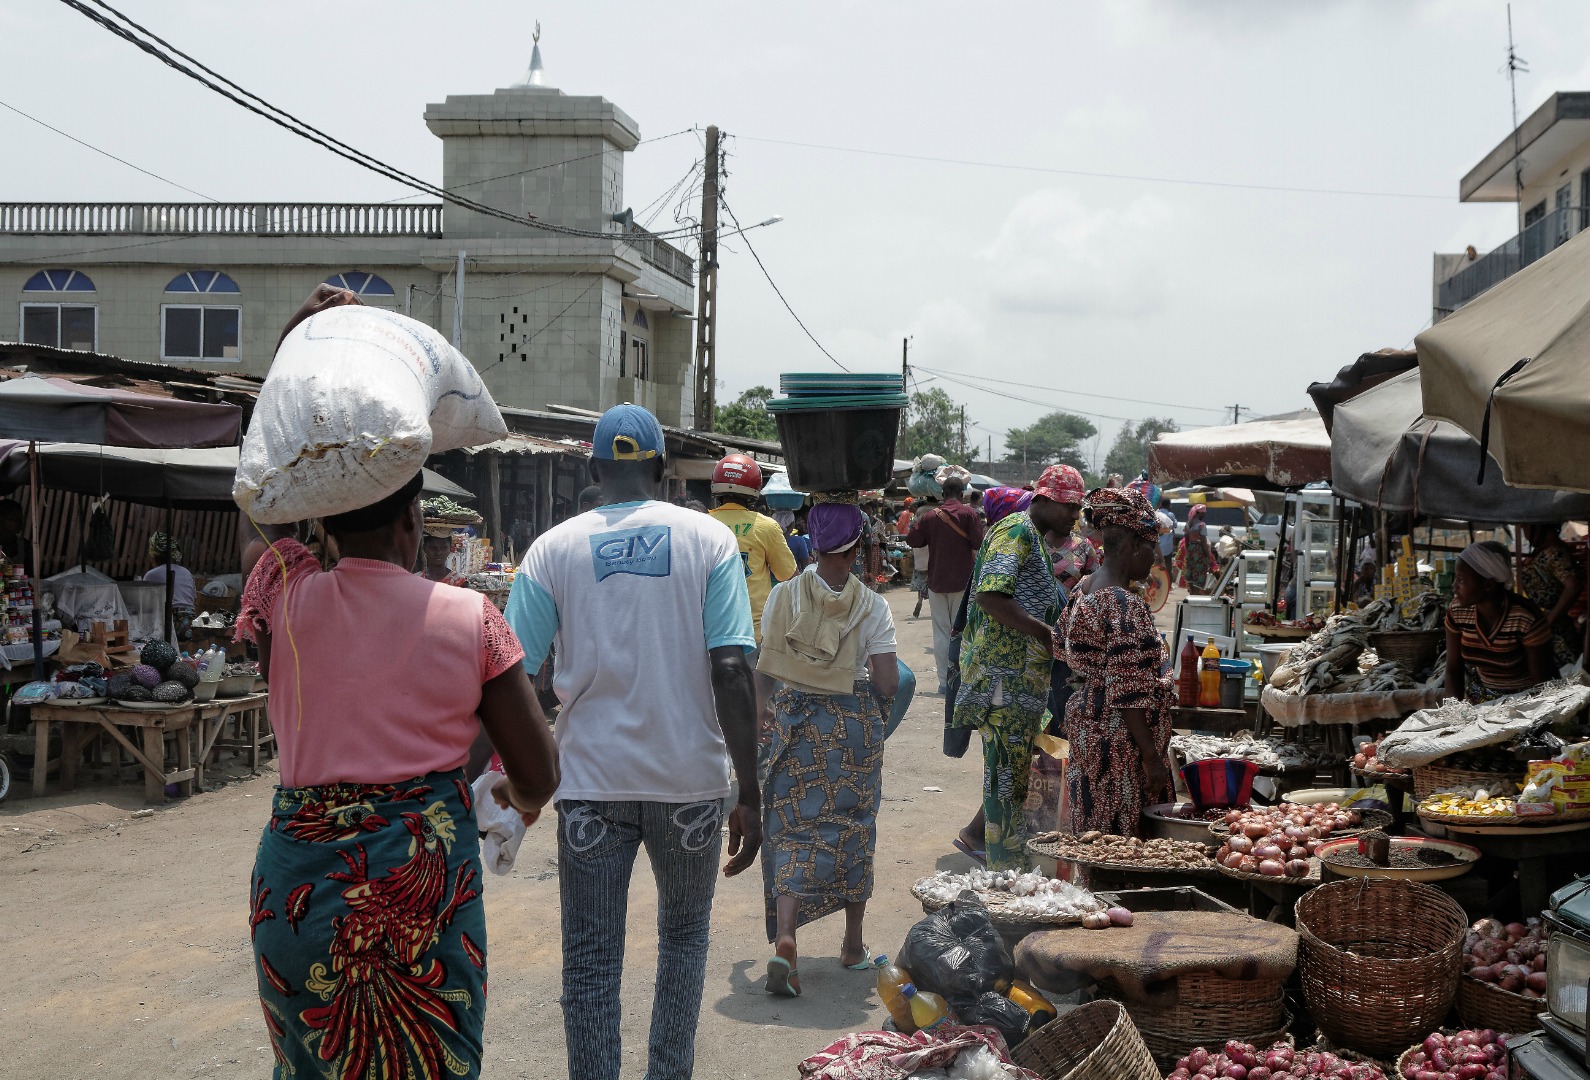 Scène de rue à Cotonou, la capitale du Bénin. (Photo: Flickr/Loic Pinseel/CC BY-NC-ND 2.0)